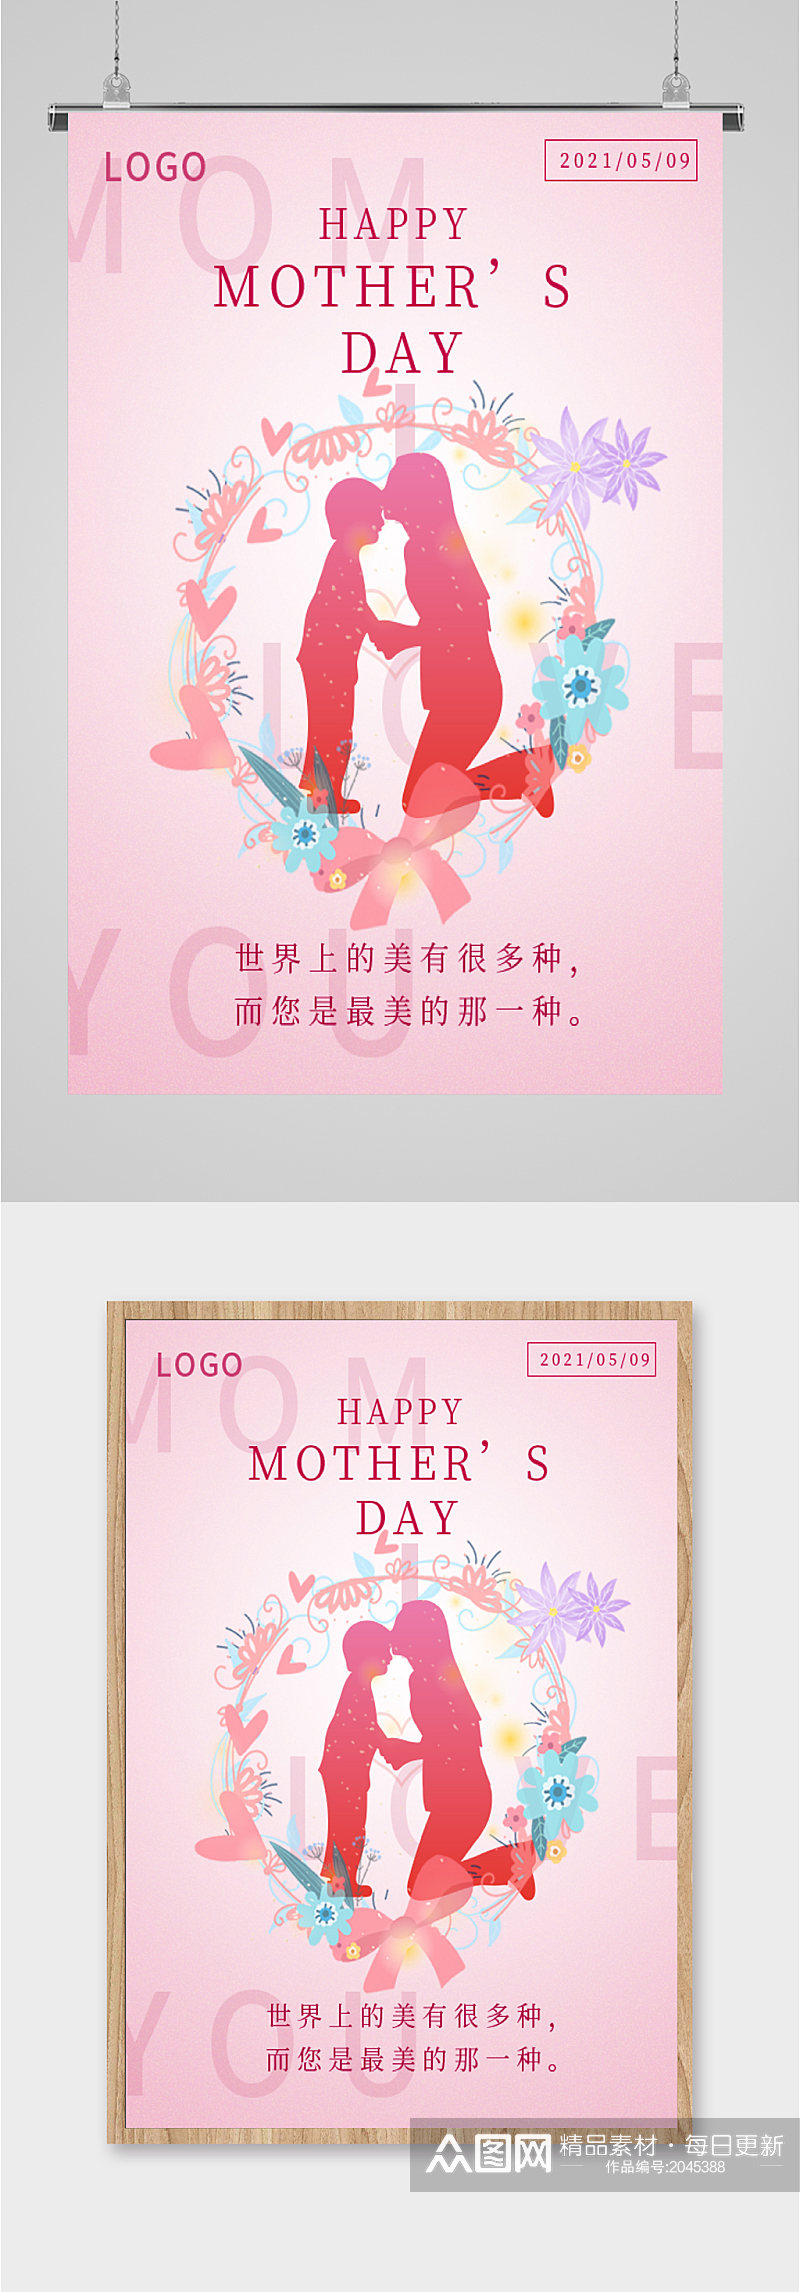 母亲节像素画粉色海报素材